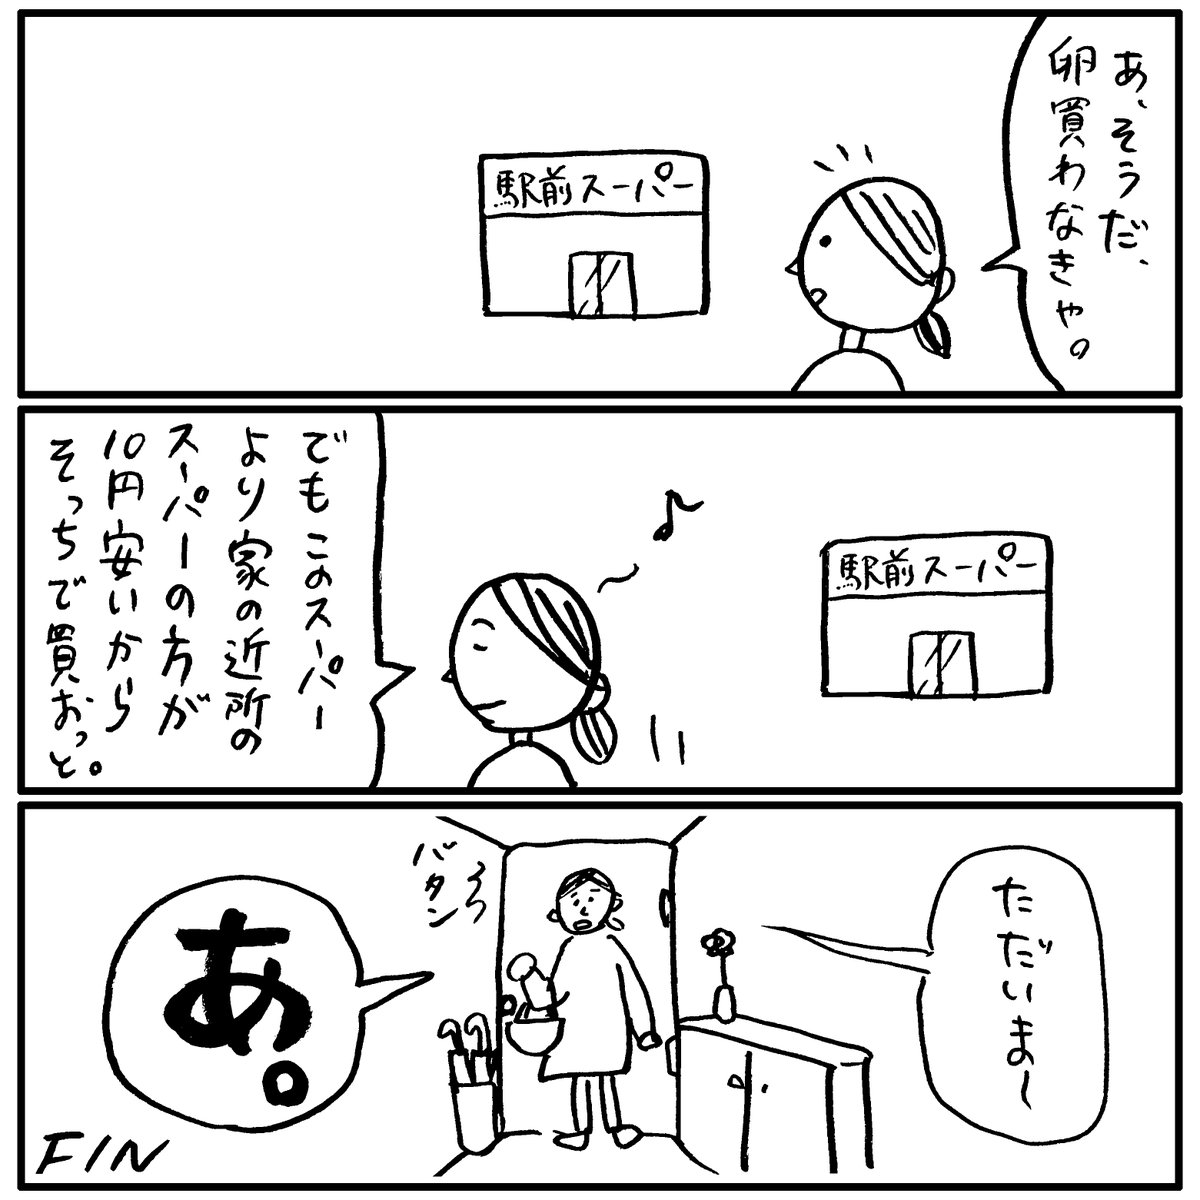 日本人の8000万人が共感する漫画。